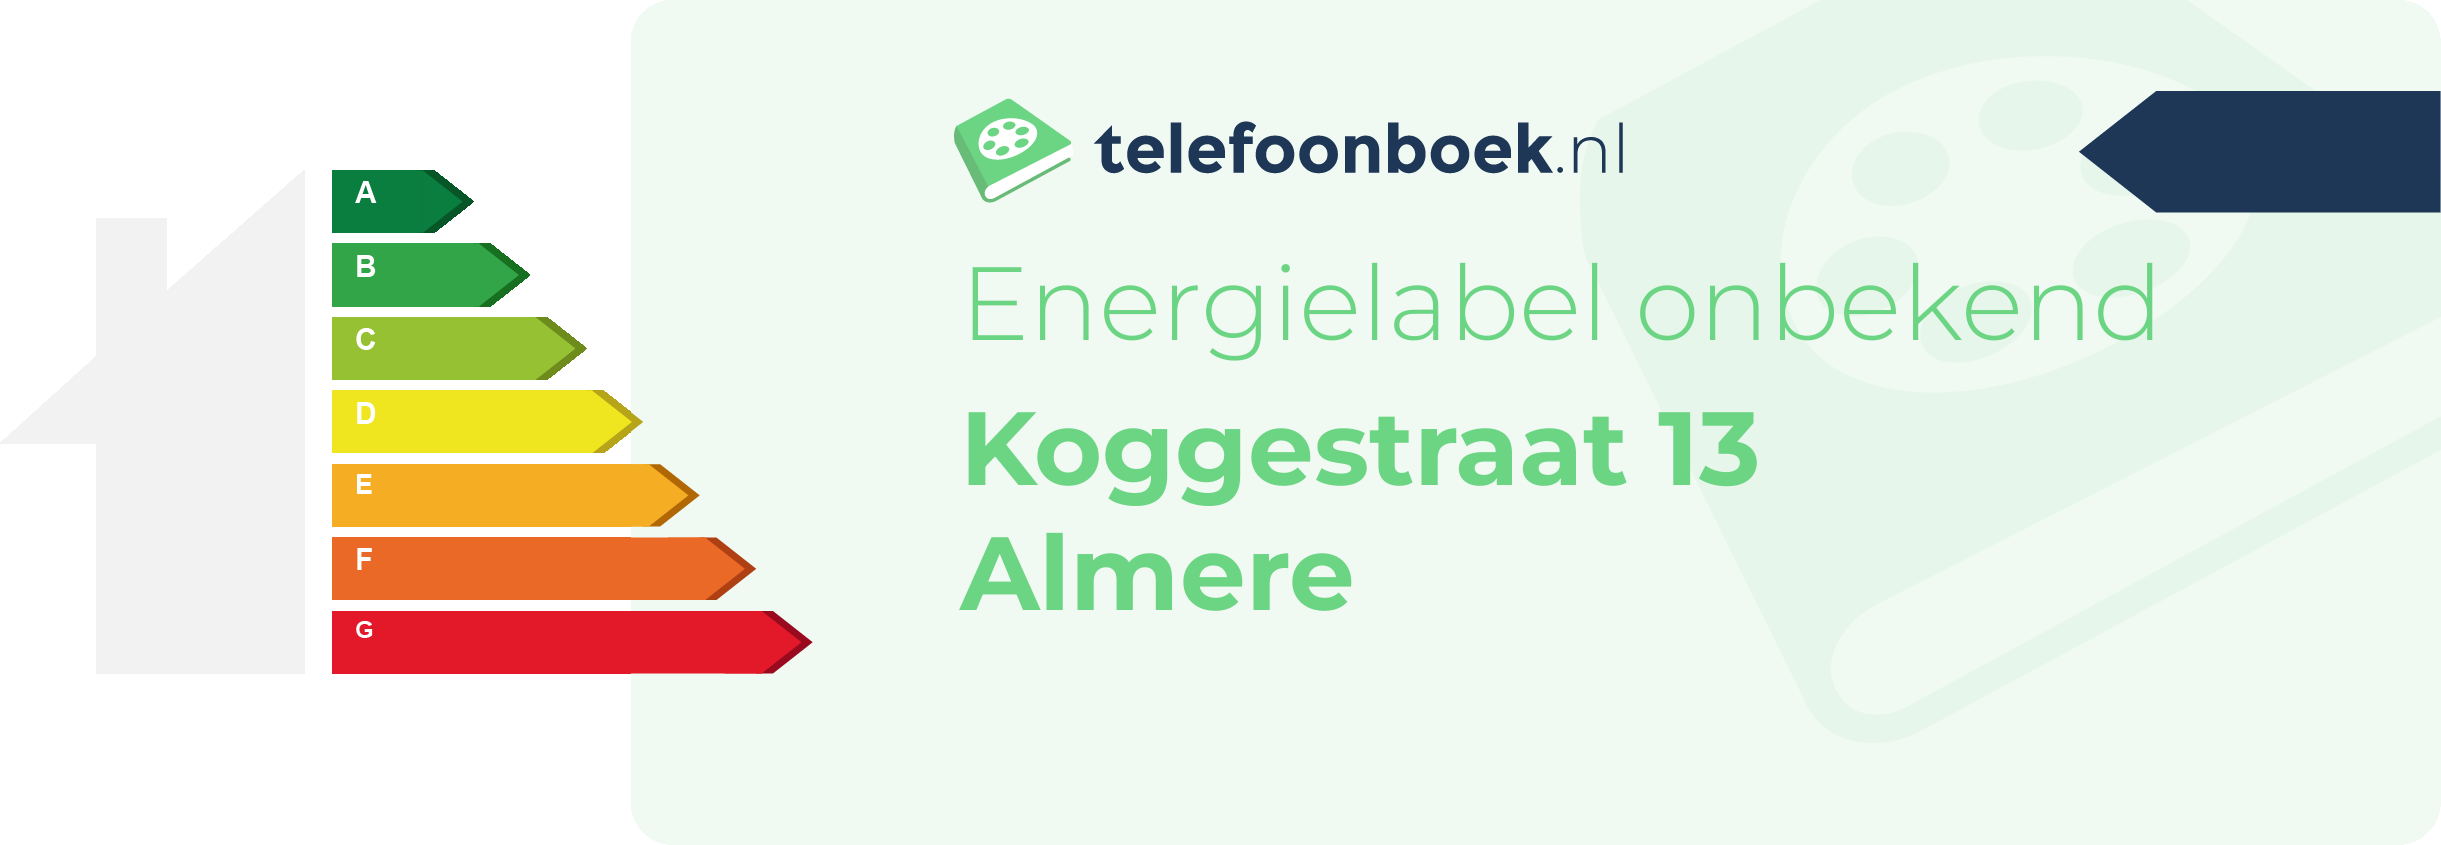 Energielabel Koggestraat 13 Almere